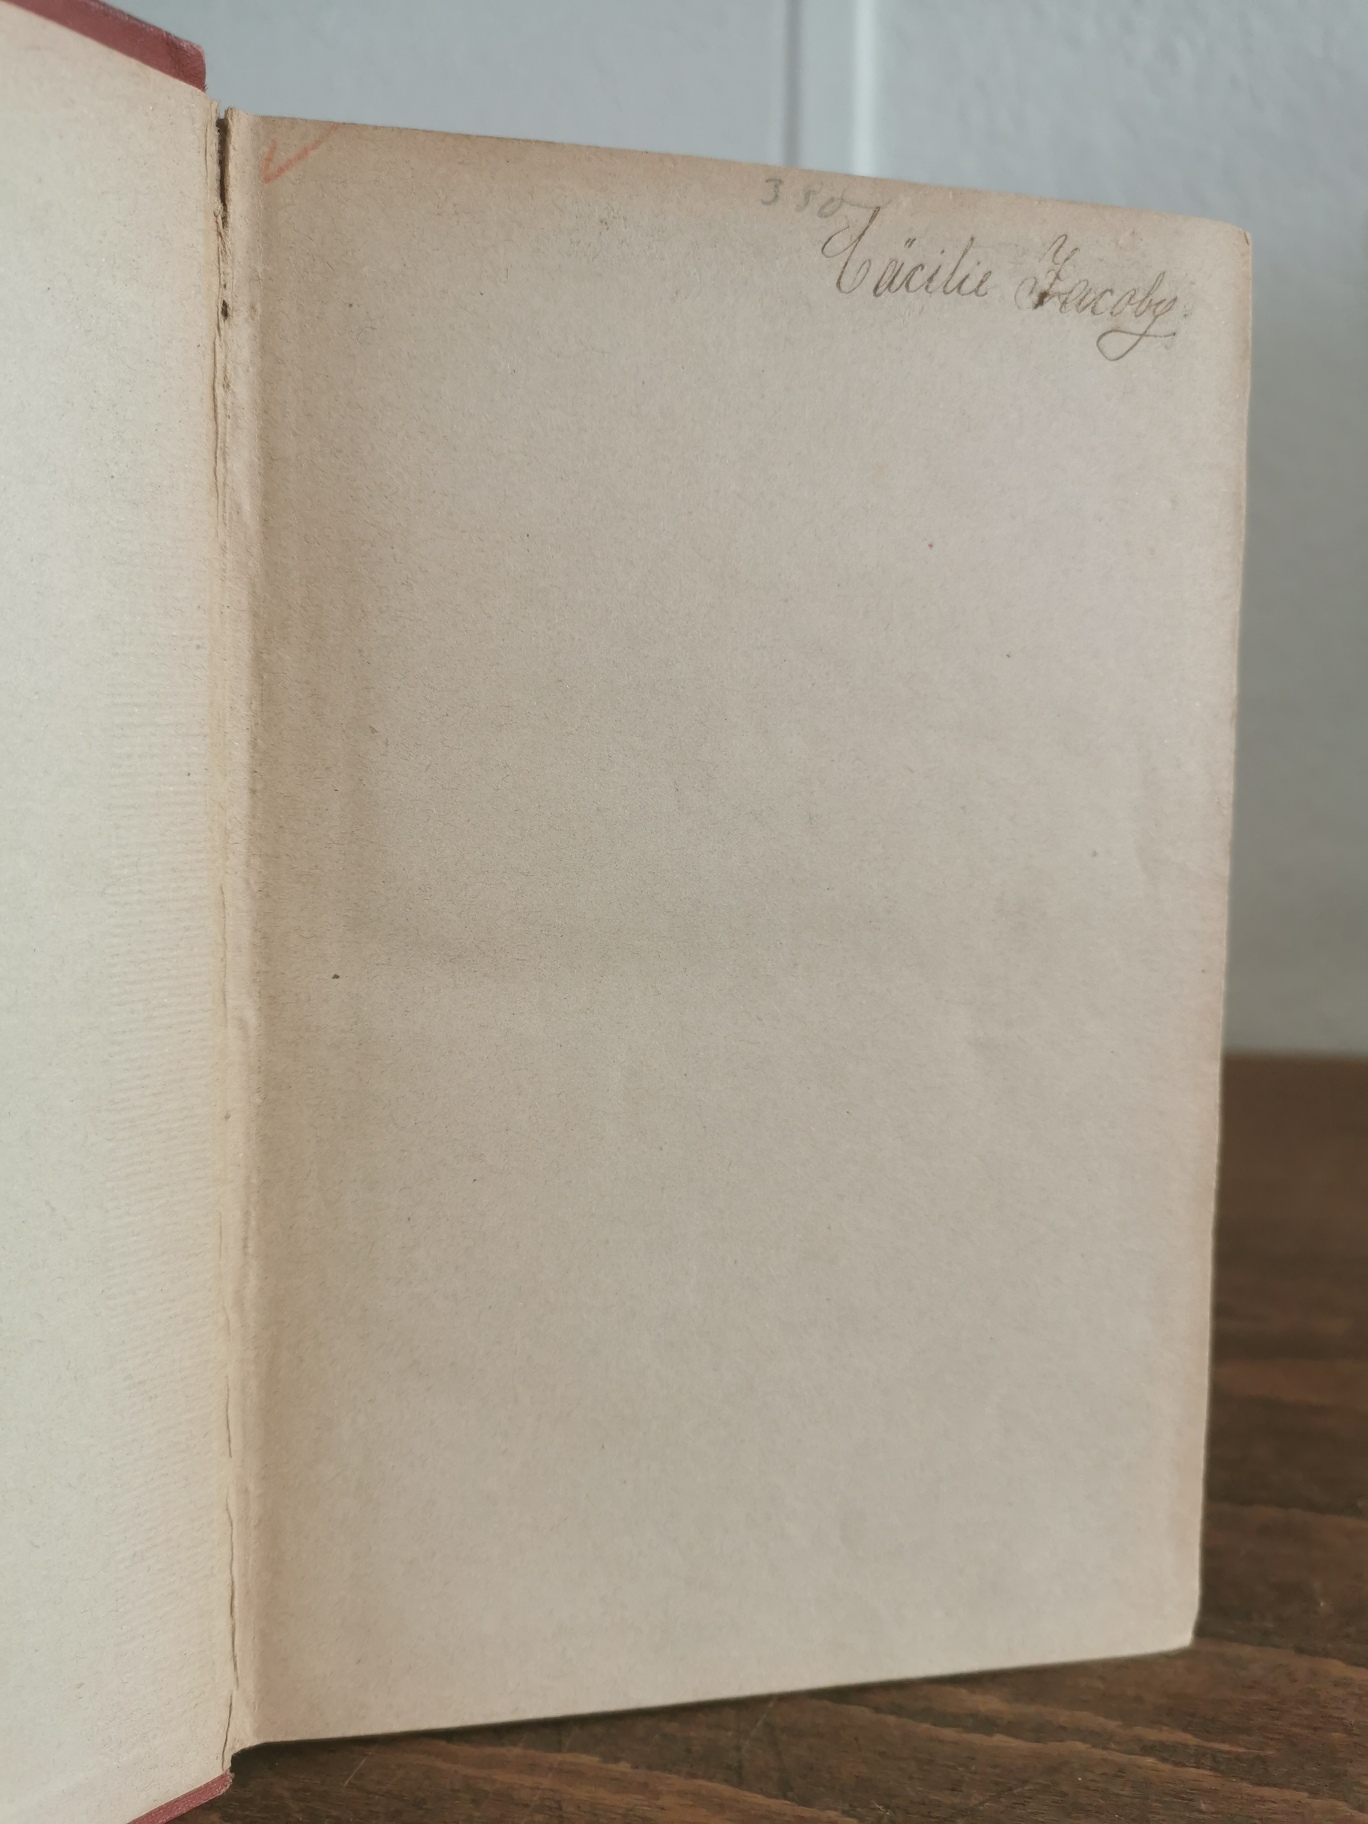 Foto von altem, aufgeschlagenem Buch mit Kennzeichung der Inhaberin Cäcilie Holländer, geb. Jacobi